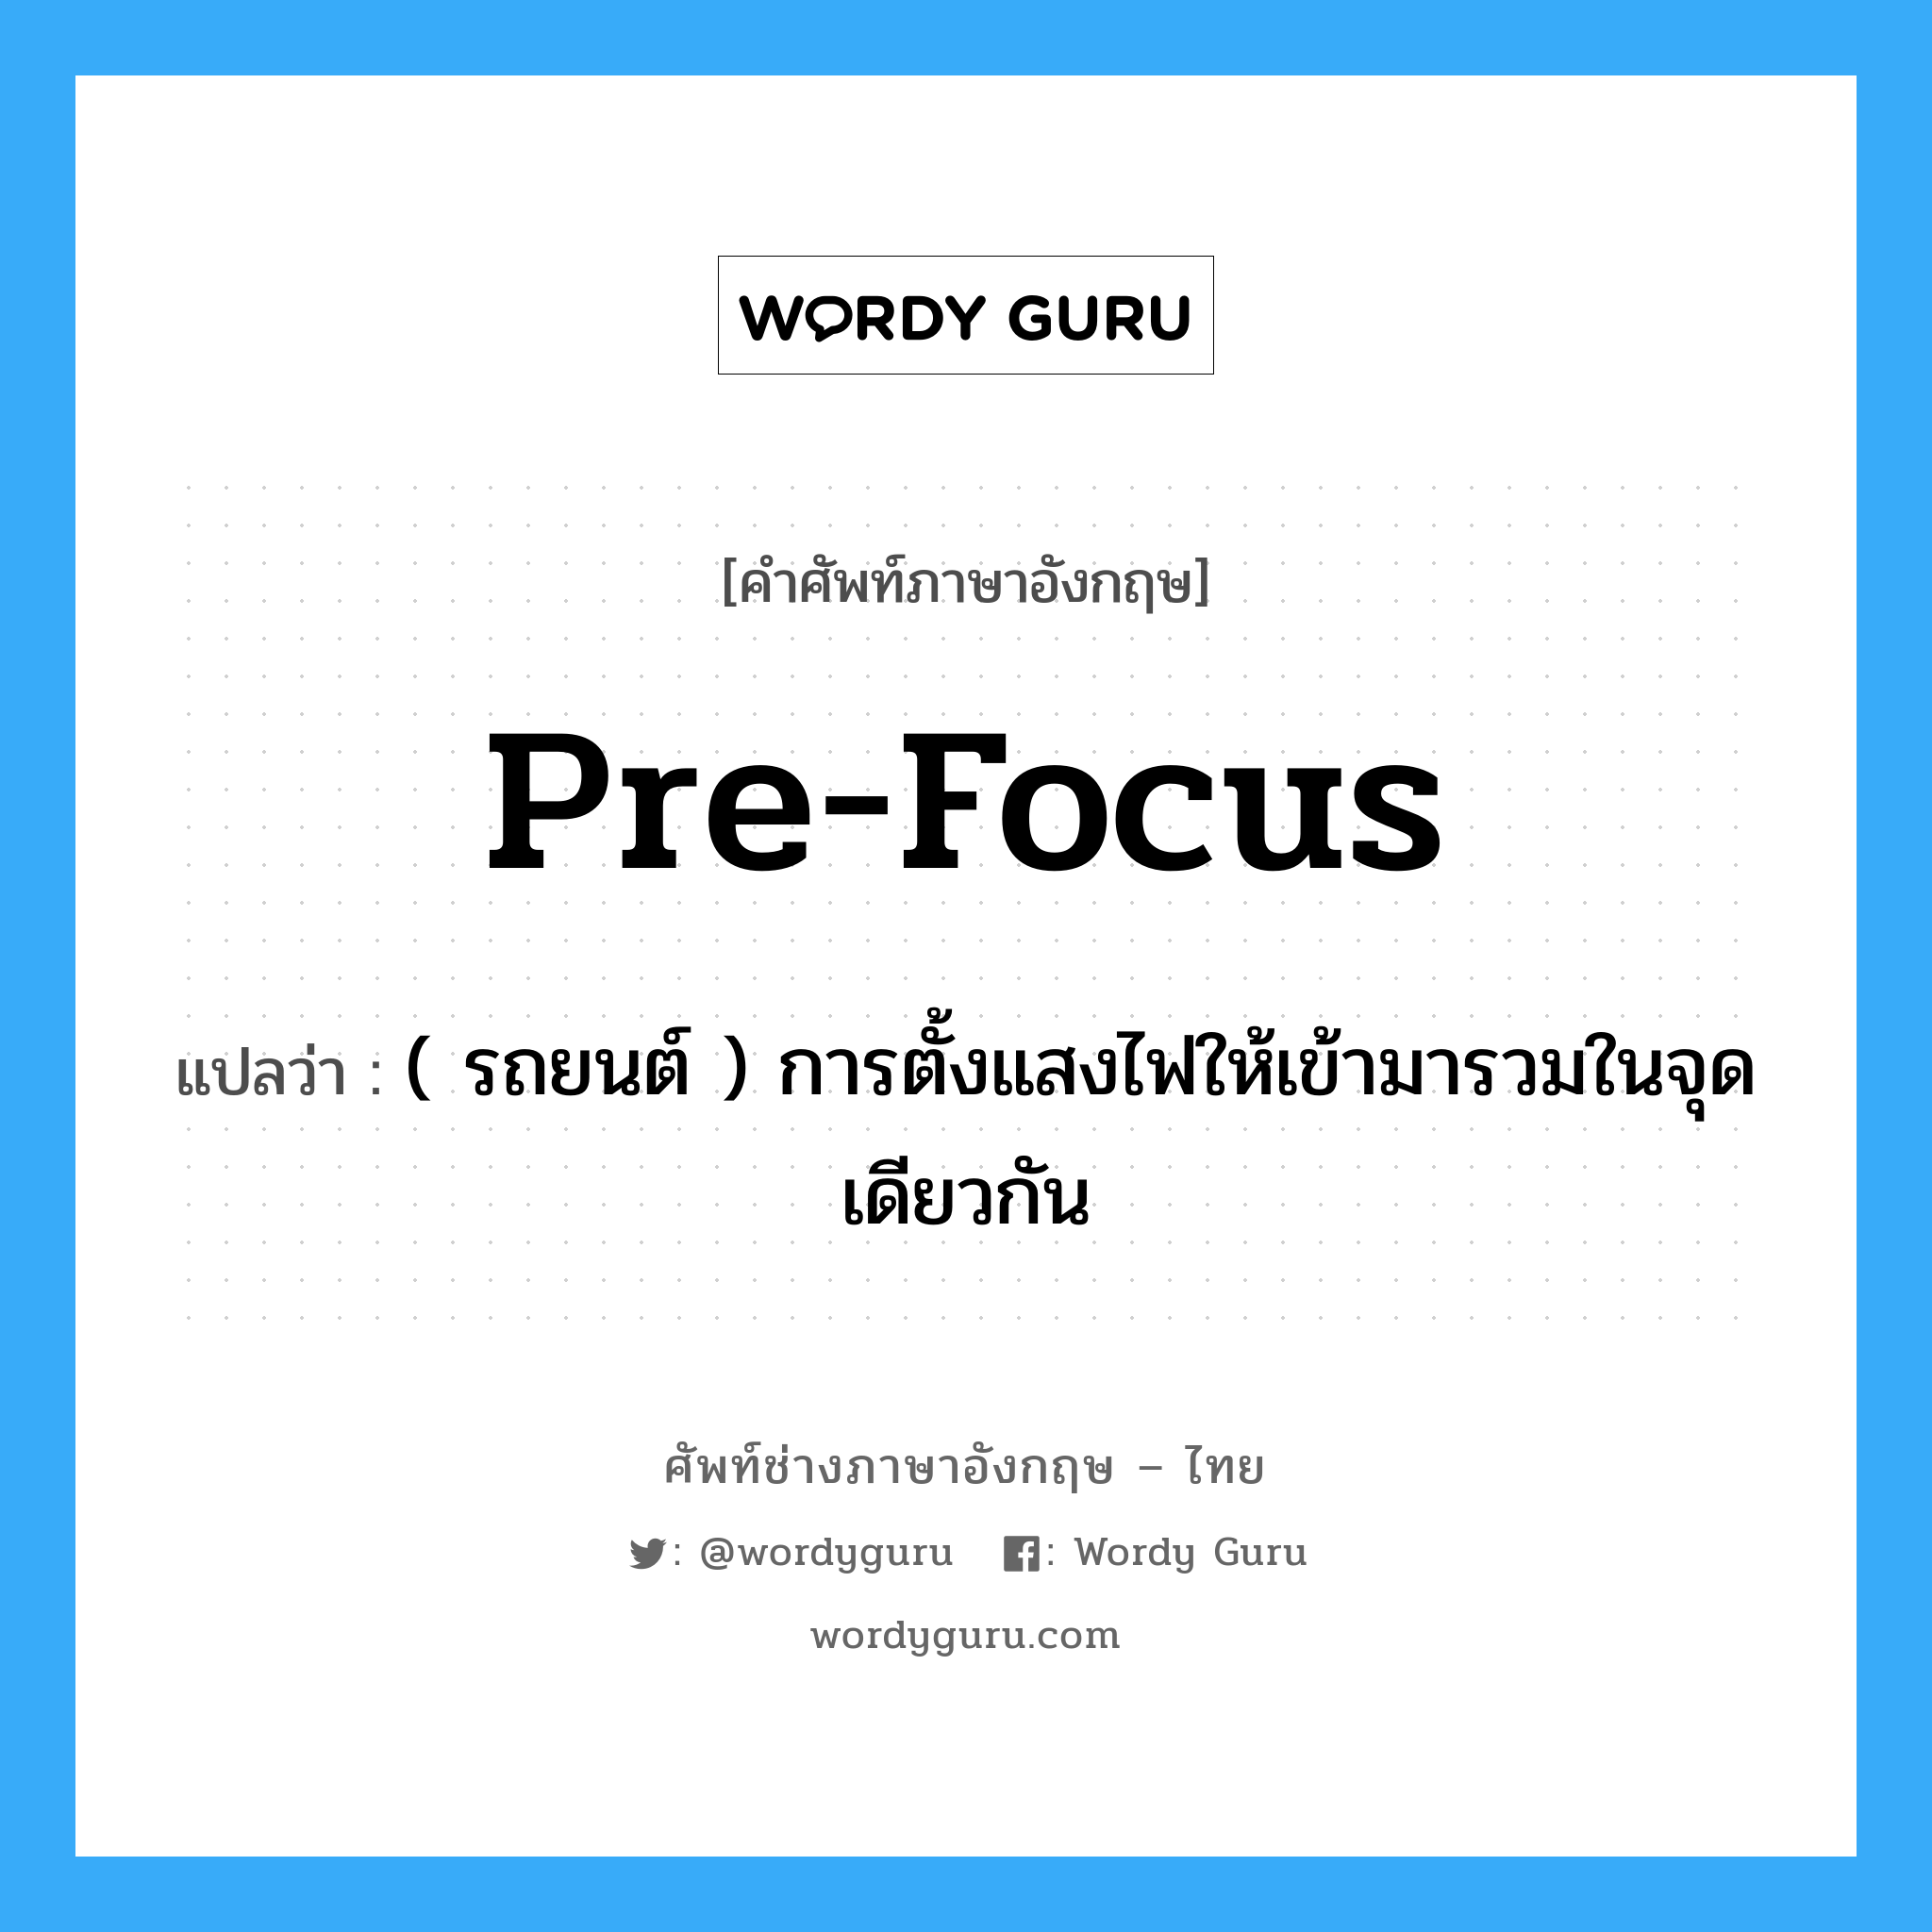 pre-focus แปลว่า?, คำศัพท์ช่างภาษาอังกฤษ - ไทย pre-focus คำศัพท์ภาษาอังกฤษ pre-focus แปลว่า ( รถยนต์ ) การตั้งแสงไฟให้เข้ามารวมในจุดเดียวกัน